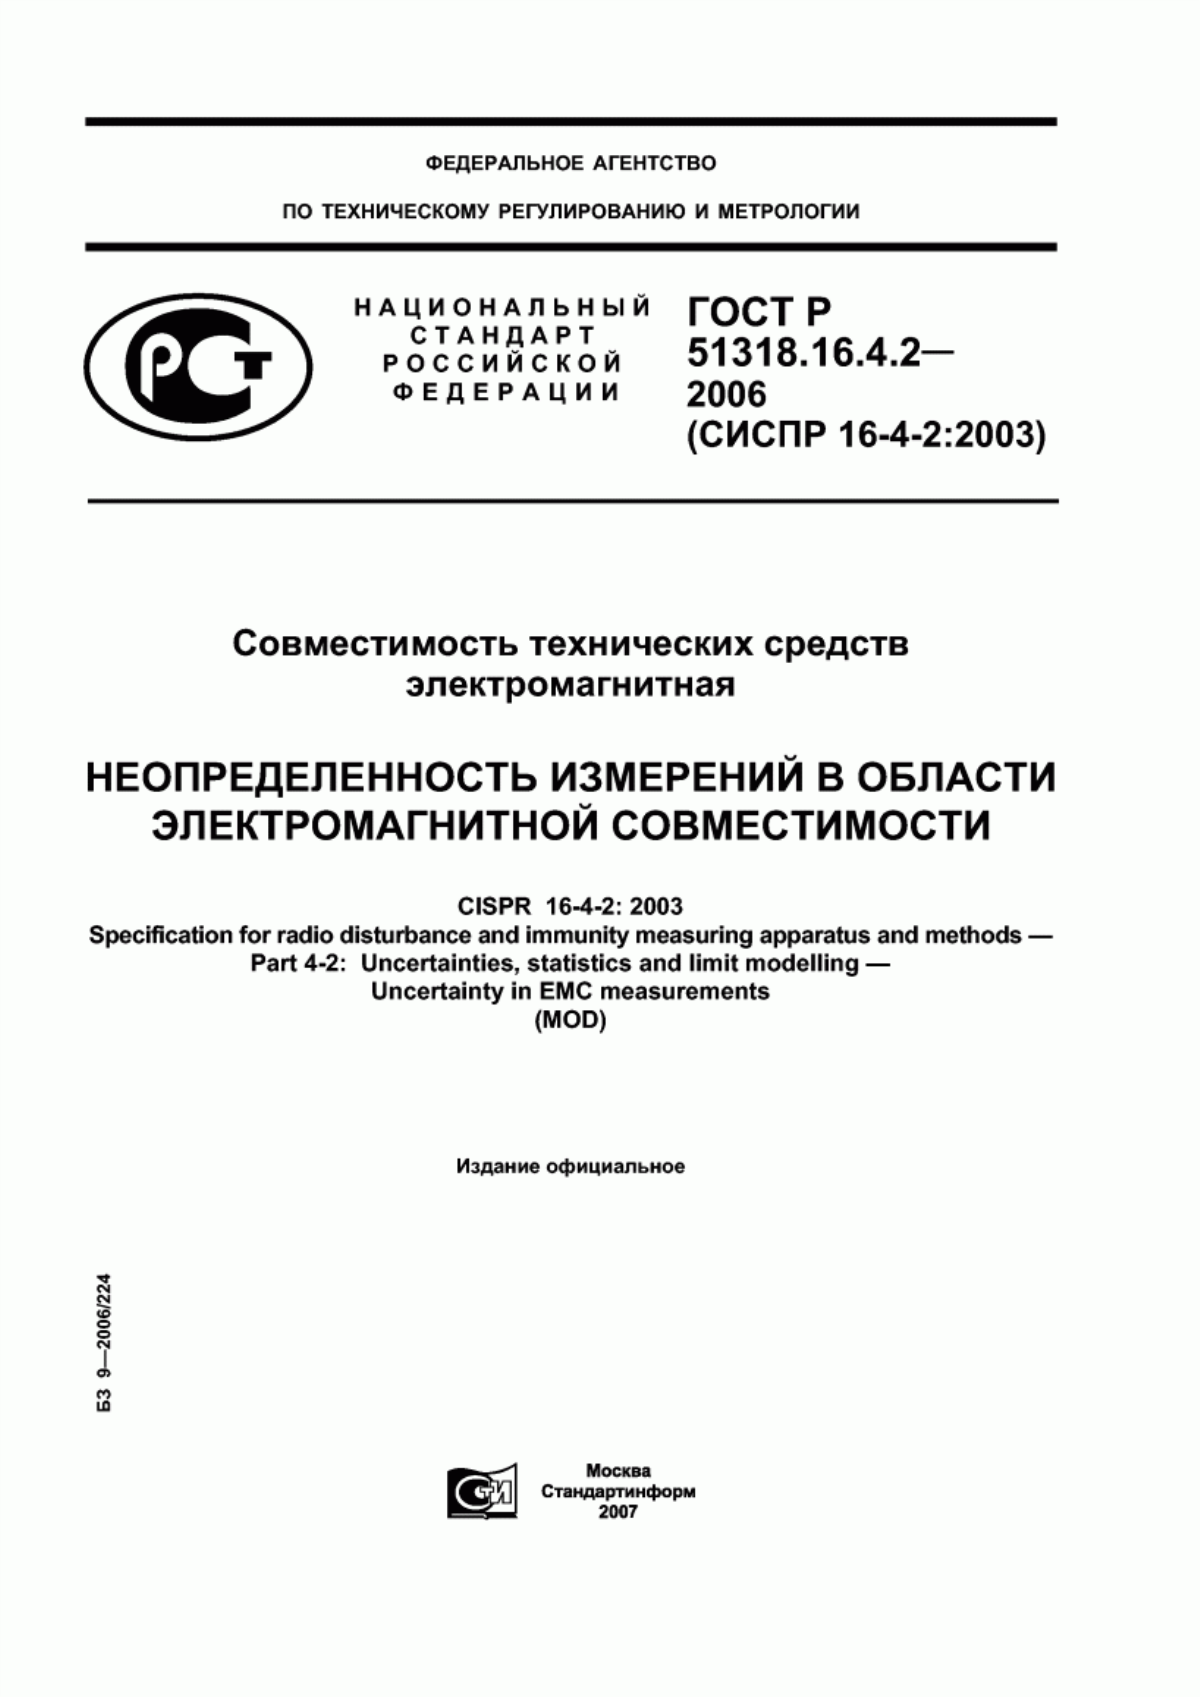 ГОСТ Р 51318.16.4.2-2006 Совместимость технических средств электромагнитная. Неопределенность измерений в области электромагнитной совместимости